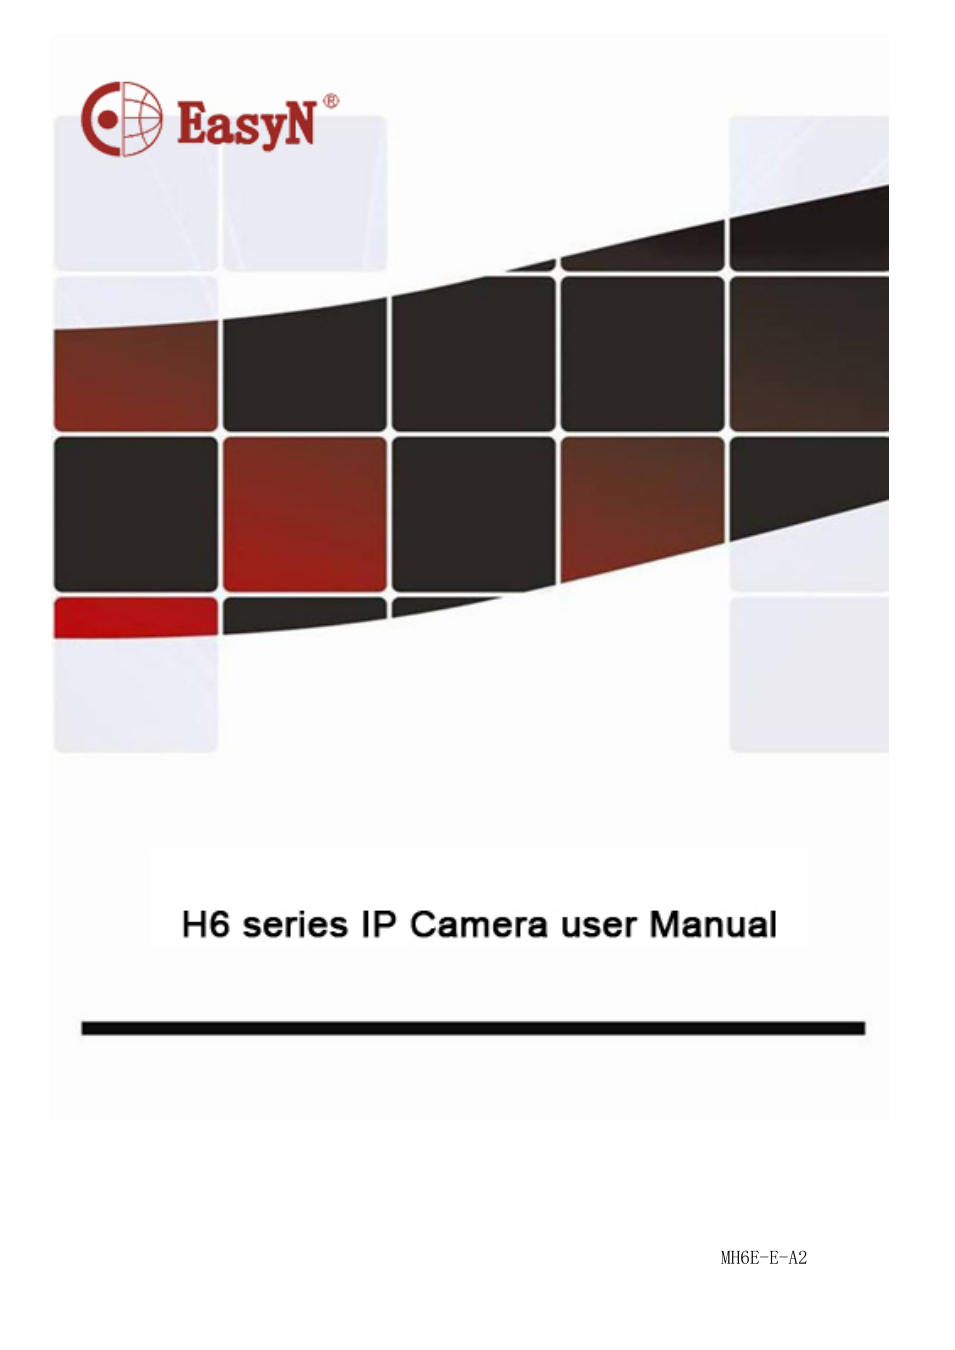 H6 Series User manual